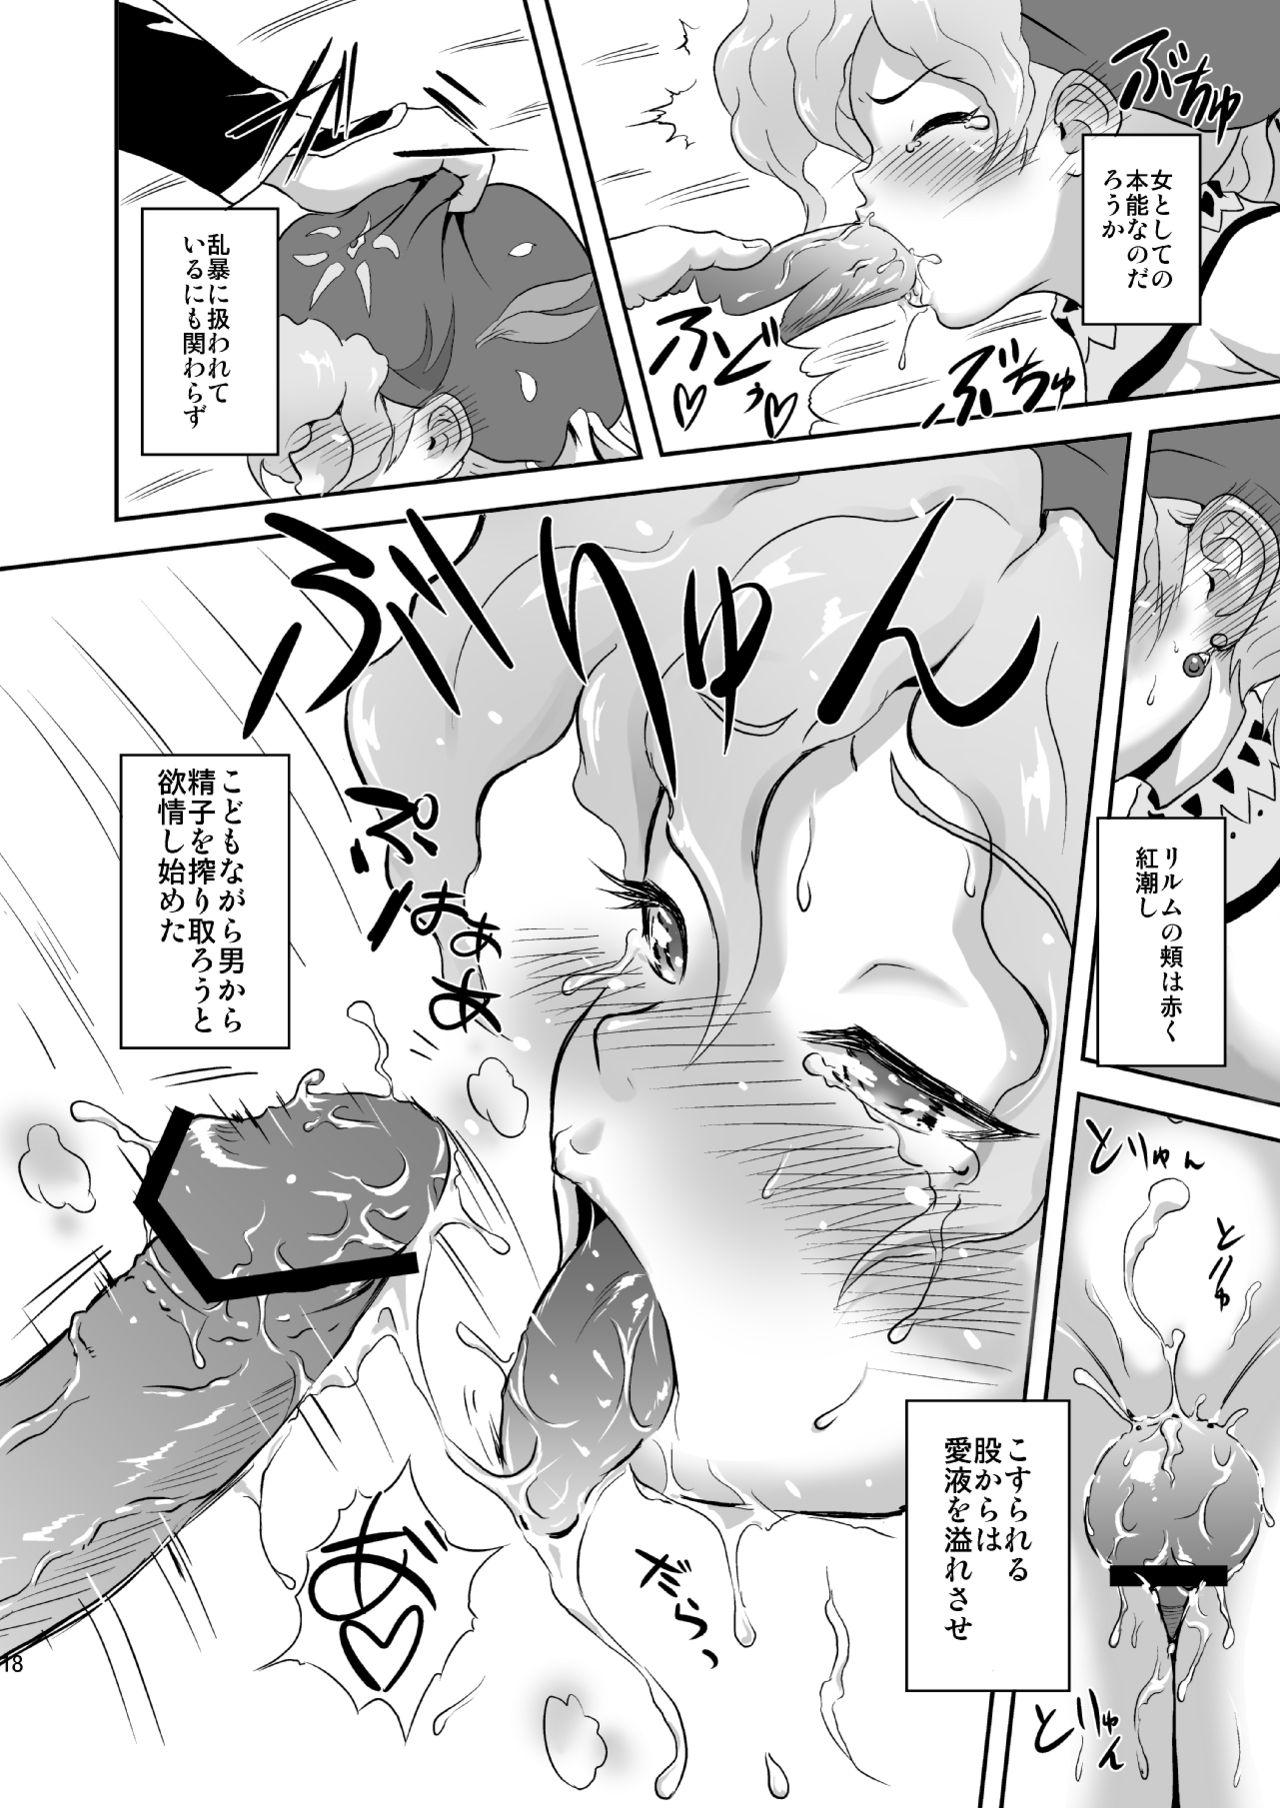 Relm-tan no Hajirai Sketch 16